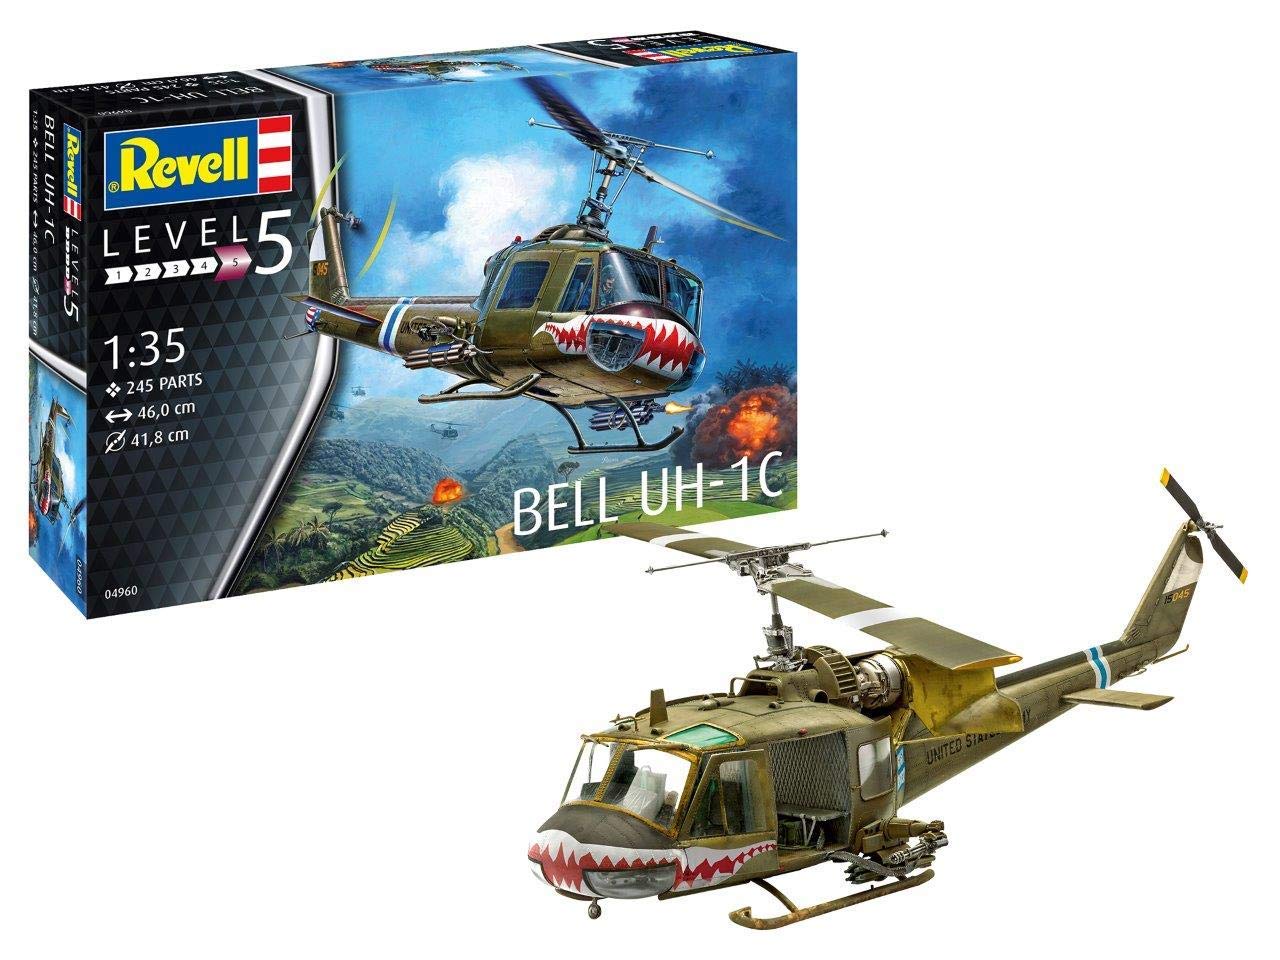 Revell Bell Model Kit Scale Model Kit Uh C Level